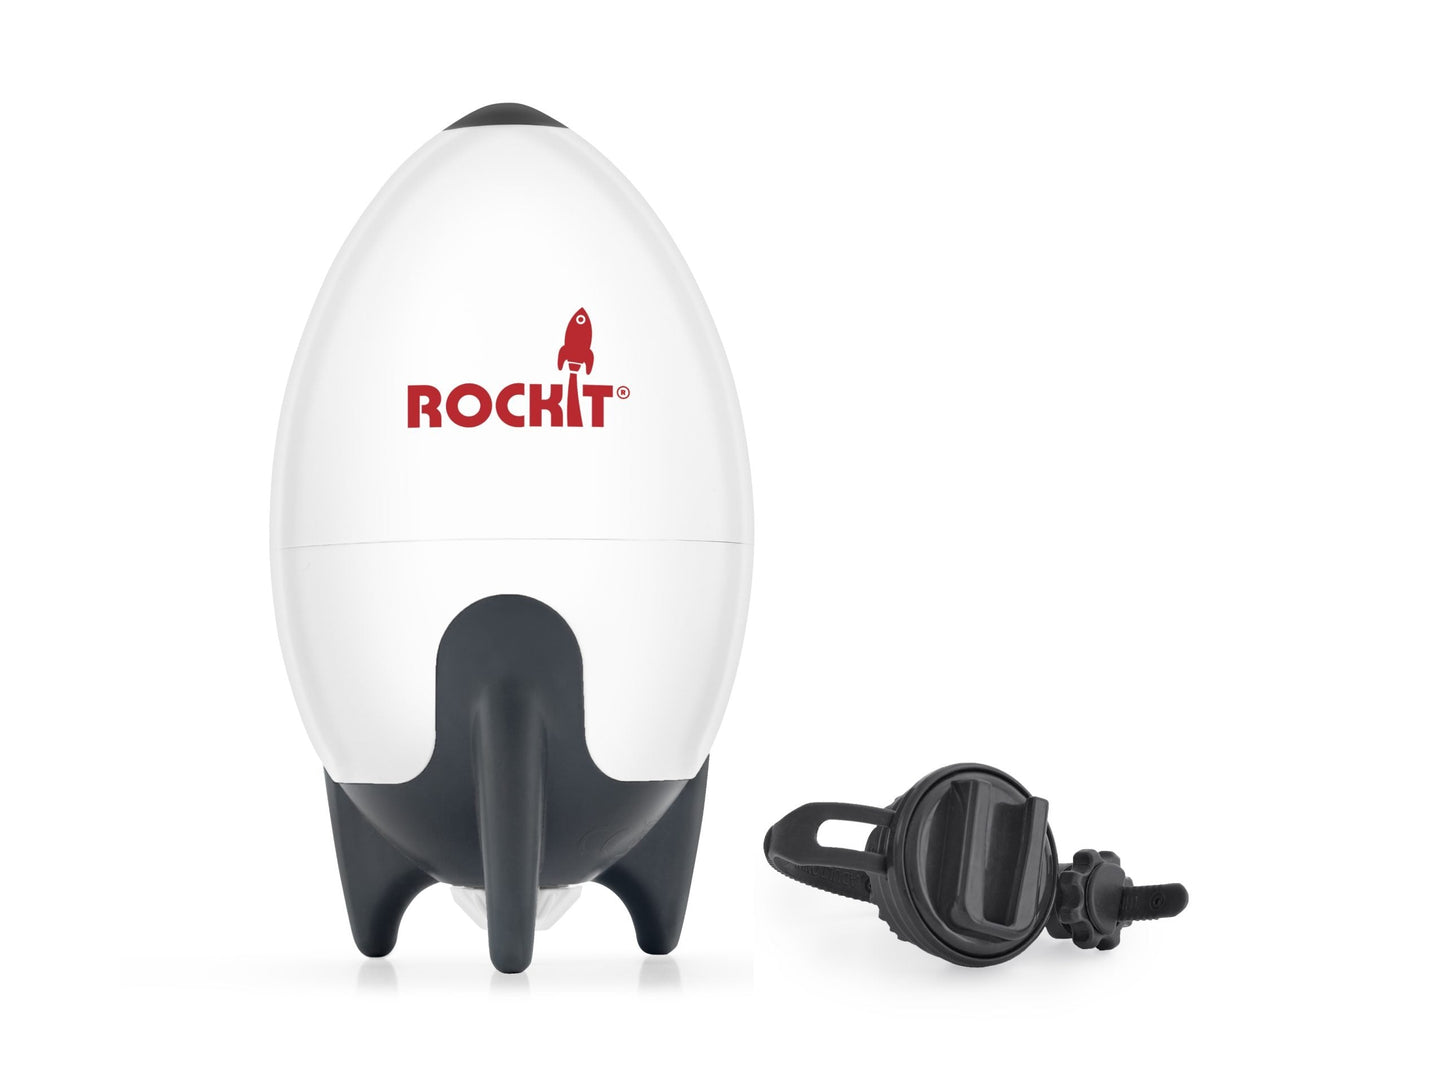 Rockit MK2 babakocsi ringató - BBLOVE | Bababolt és webshop